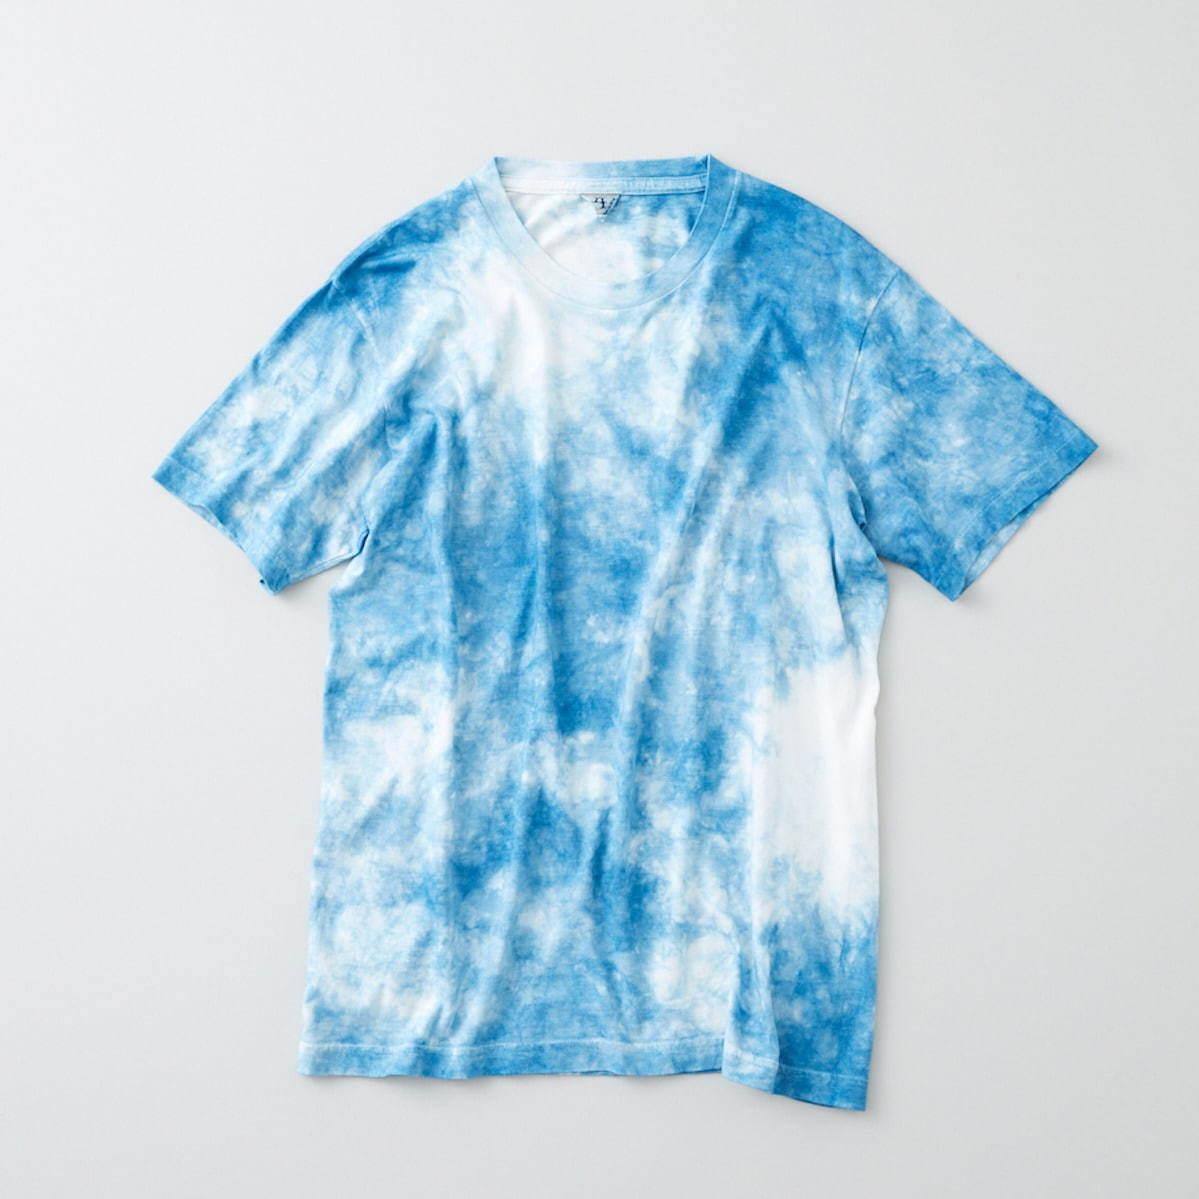 フィルメランジェ×藍染め職人集団リトマスの“タイダイ”Tシャツ、ジーンズのように経年変化 コピー